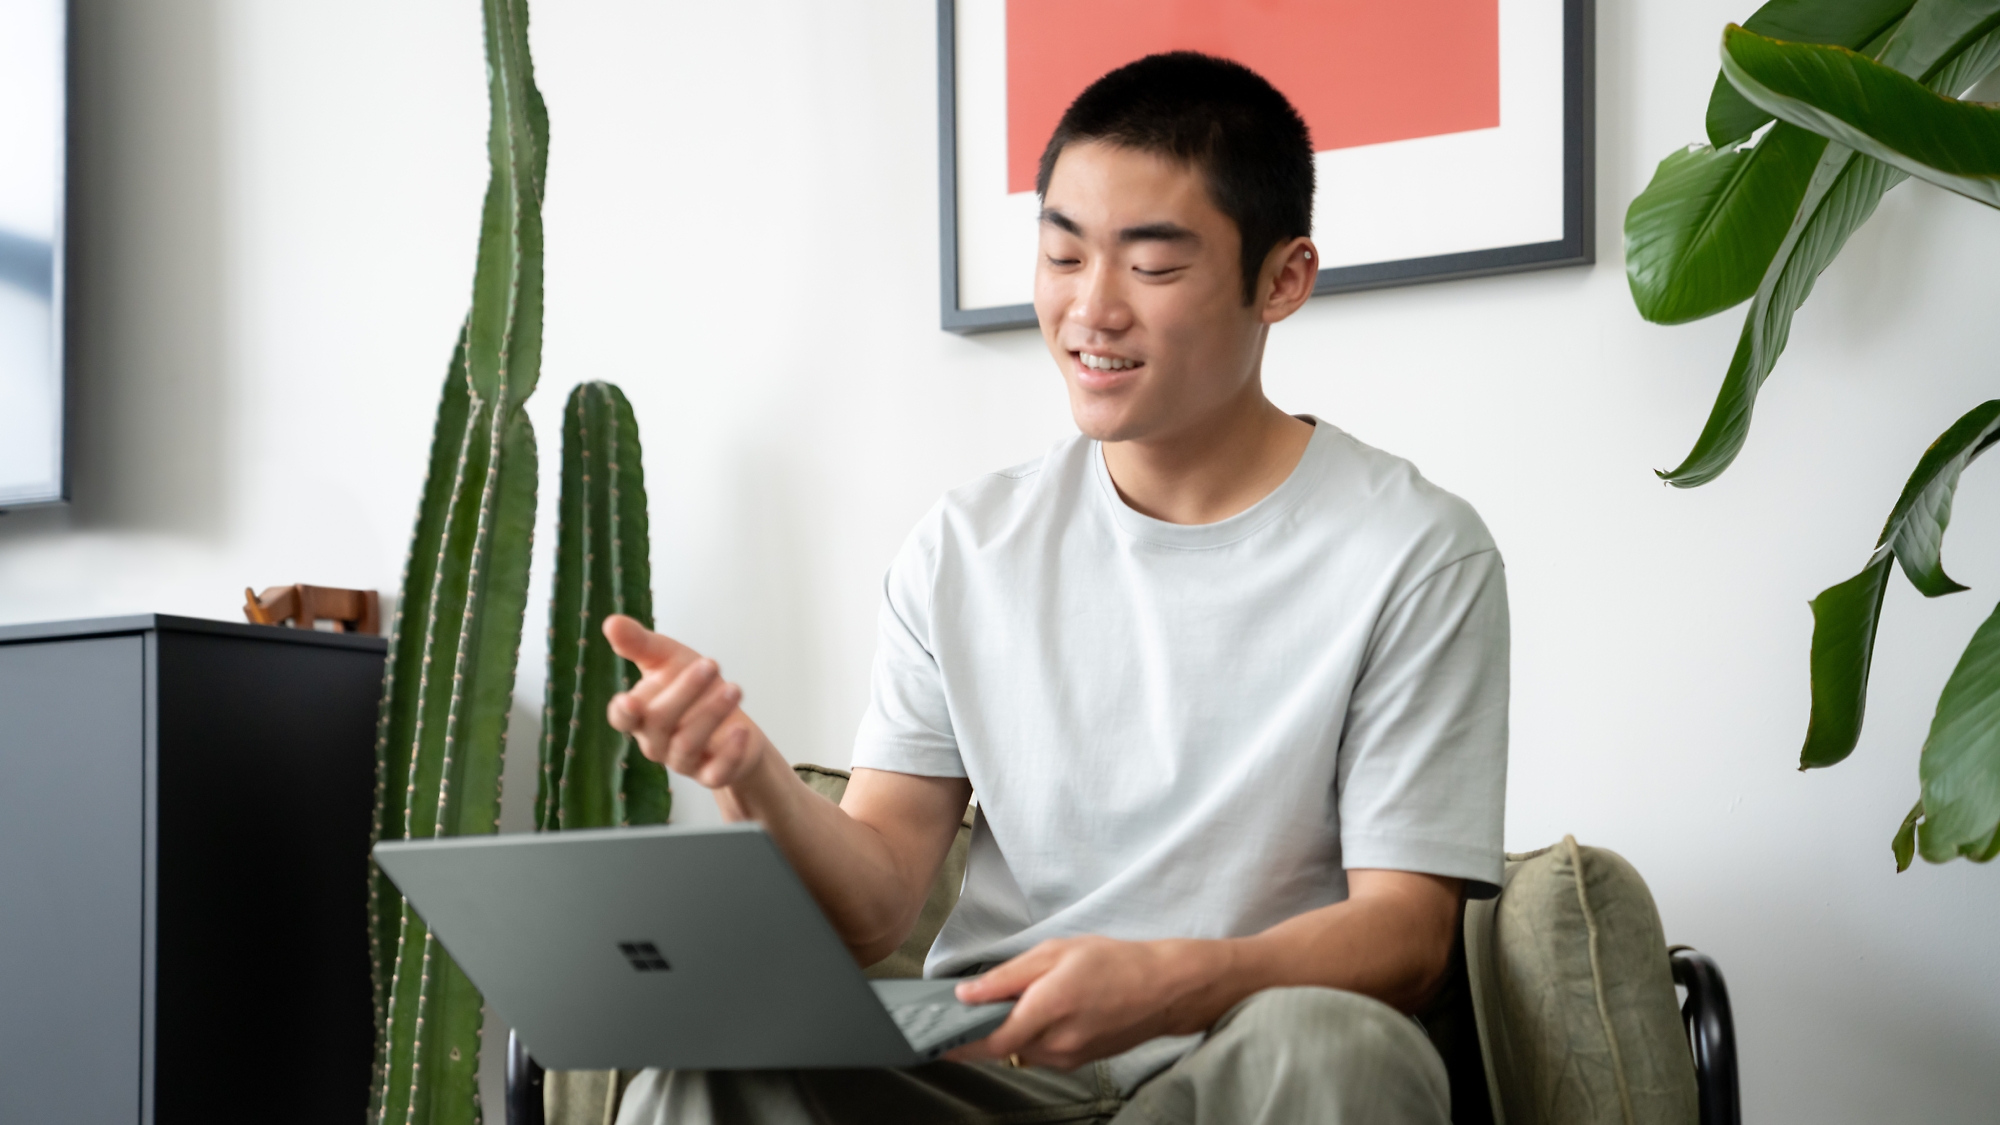 Vrolijke jonge man die een laptop gebruikt in een moderne kamer met kamerplanten.